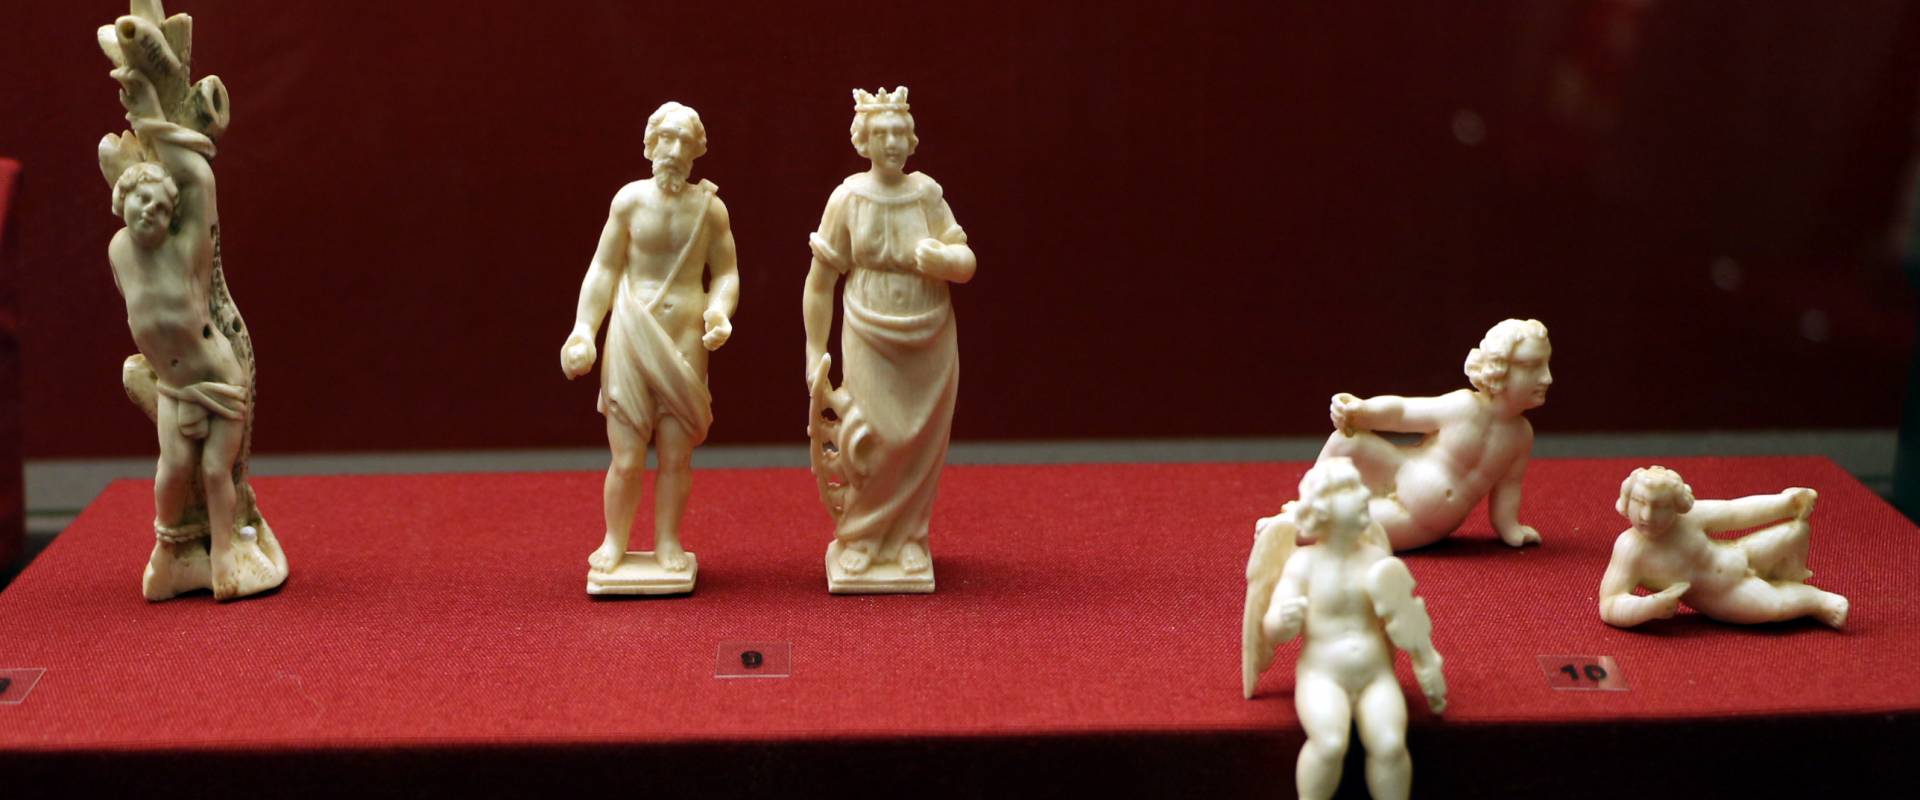 Statuette di santi e angioletti, avorio, italia xvii secolo (san sebastiano xviii) foto di Sailko